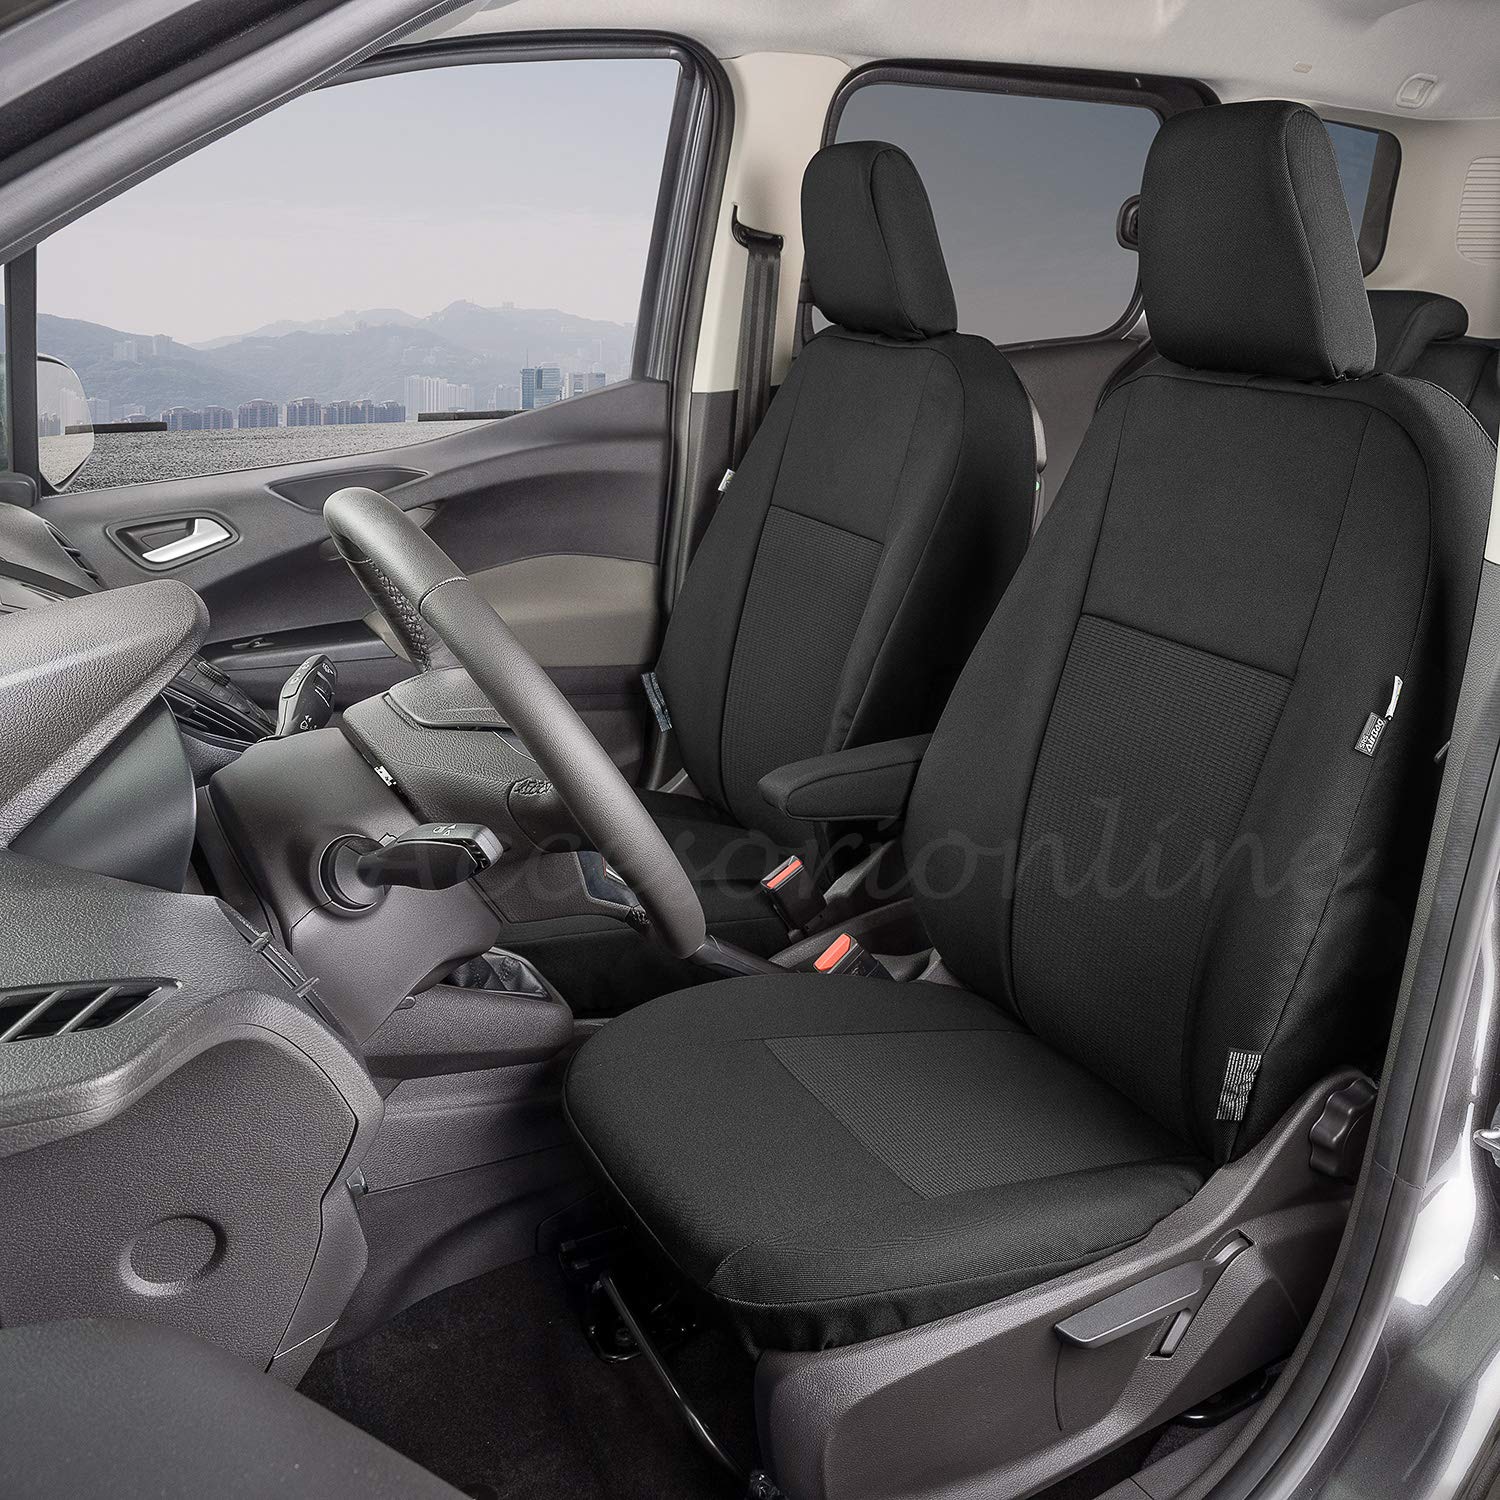 Sitzbezüge für Ford Transit Courier / Tourneo Courier - 100% passgenau, höchste Qualität von Accesorionline